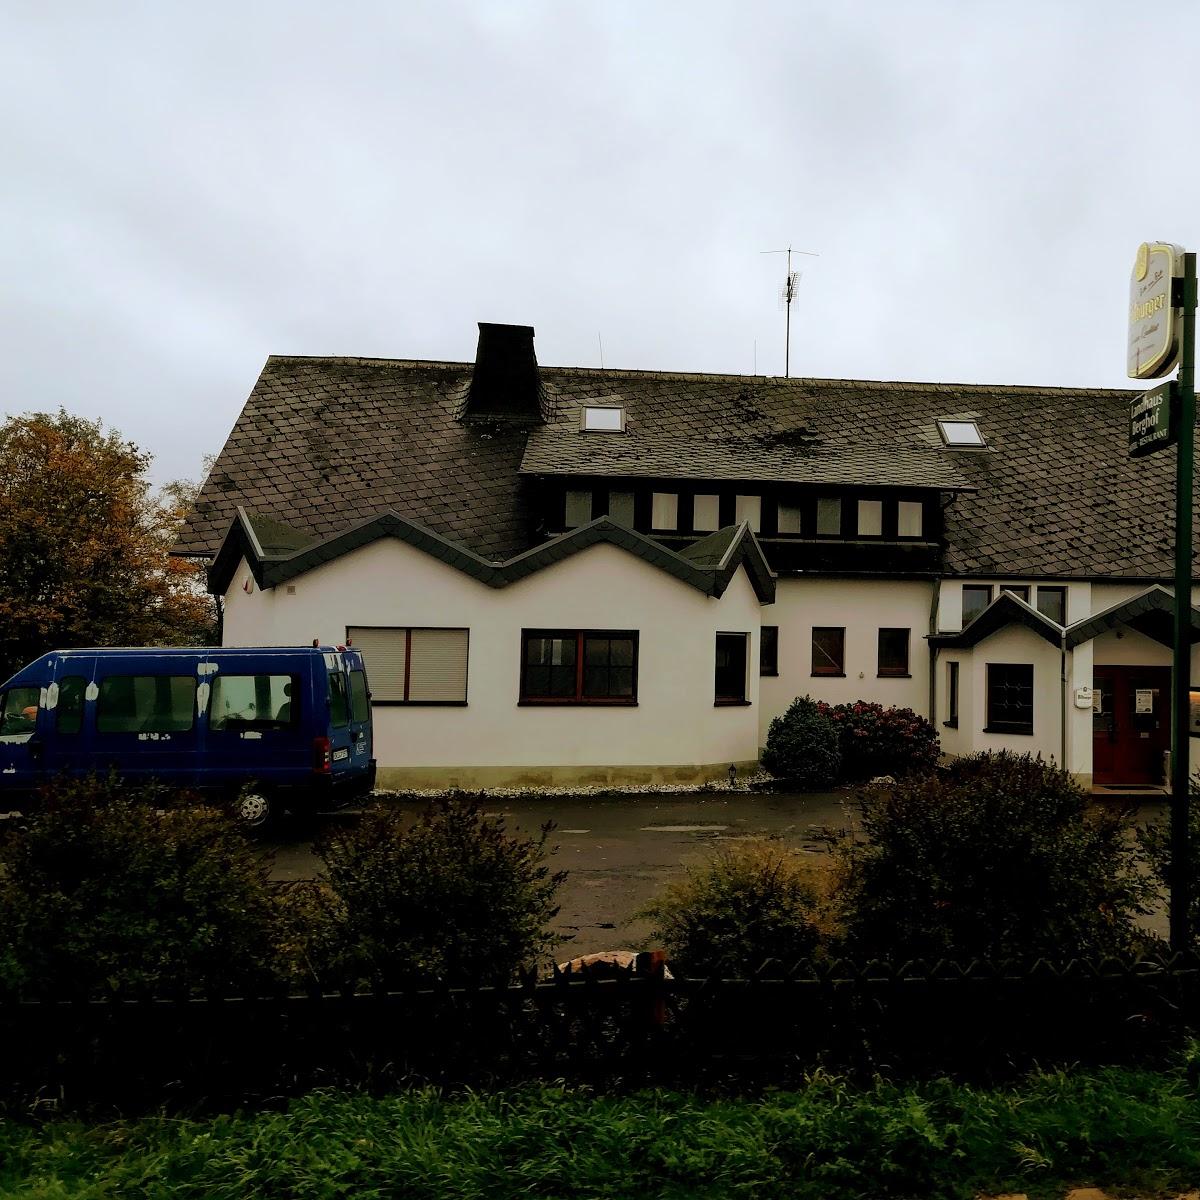 Restaurant "Landhaus Berghof" in Thalfang